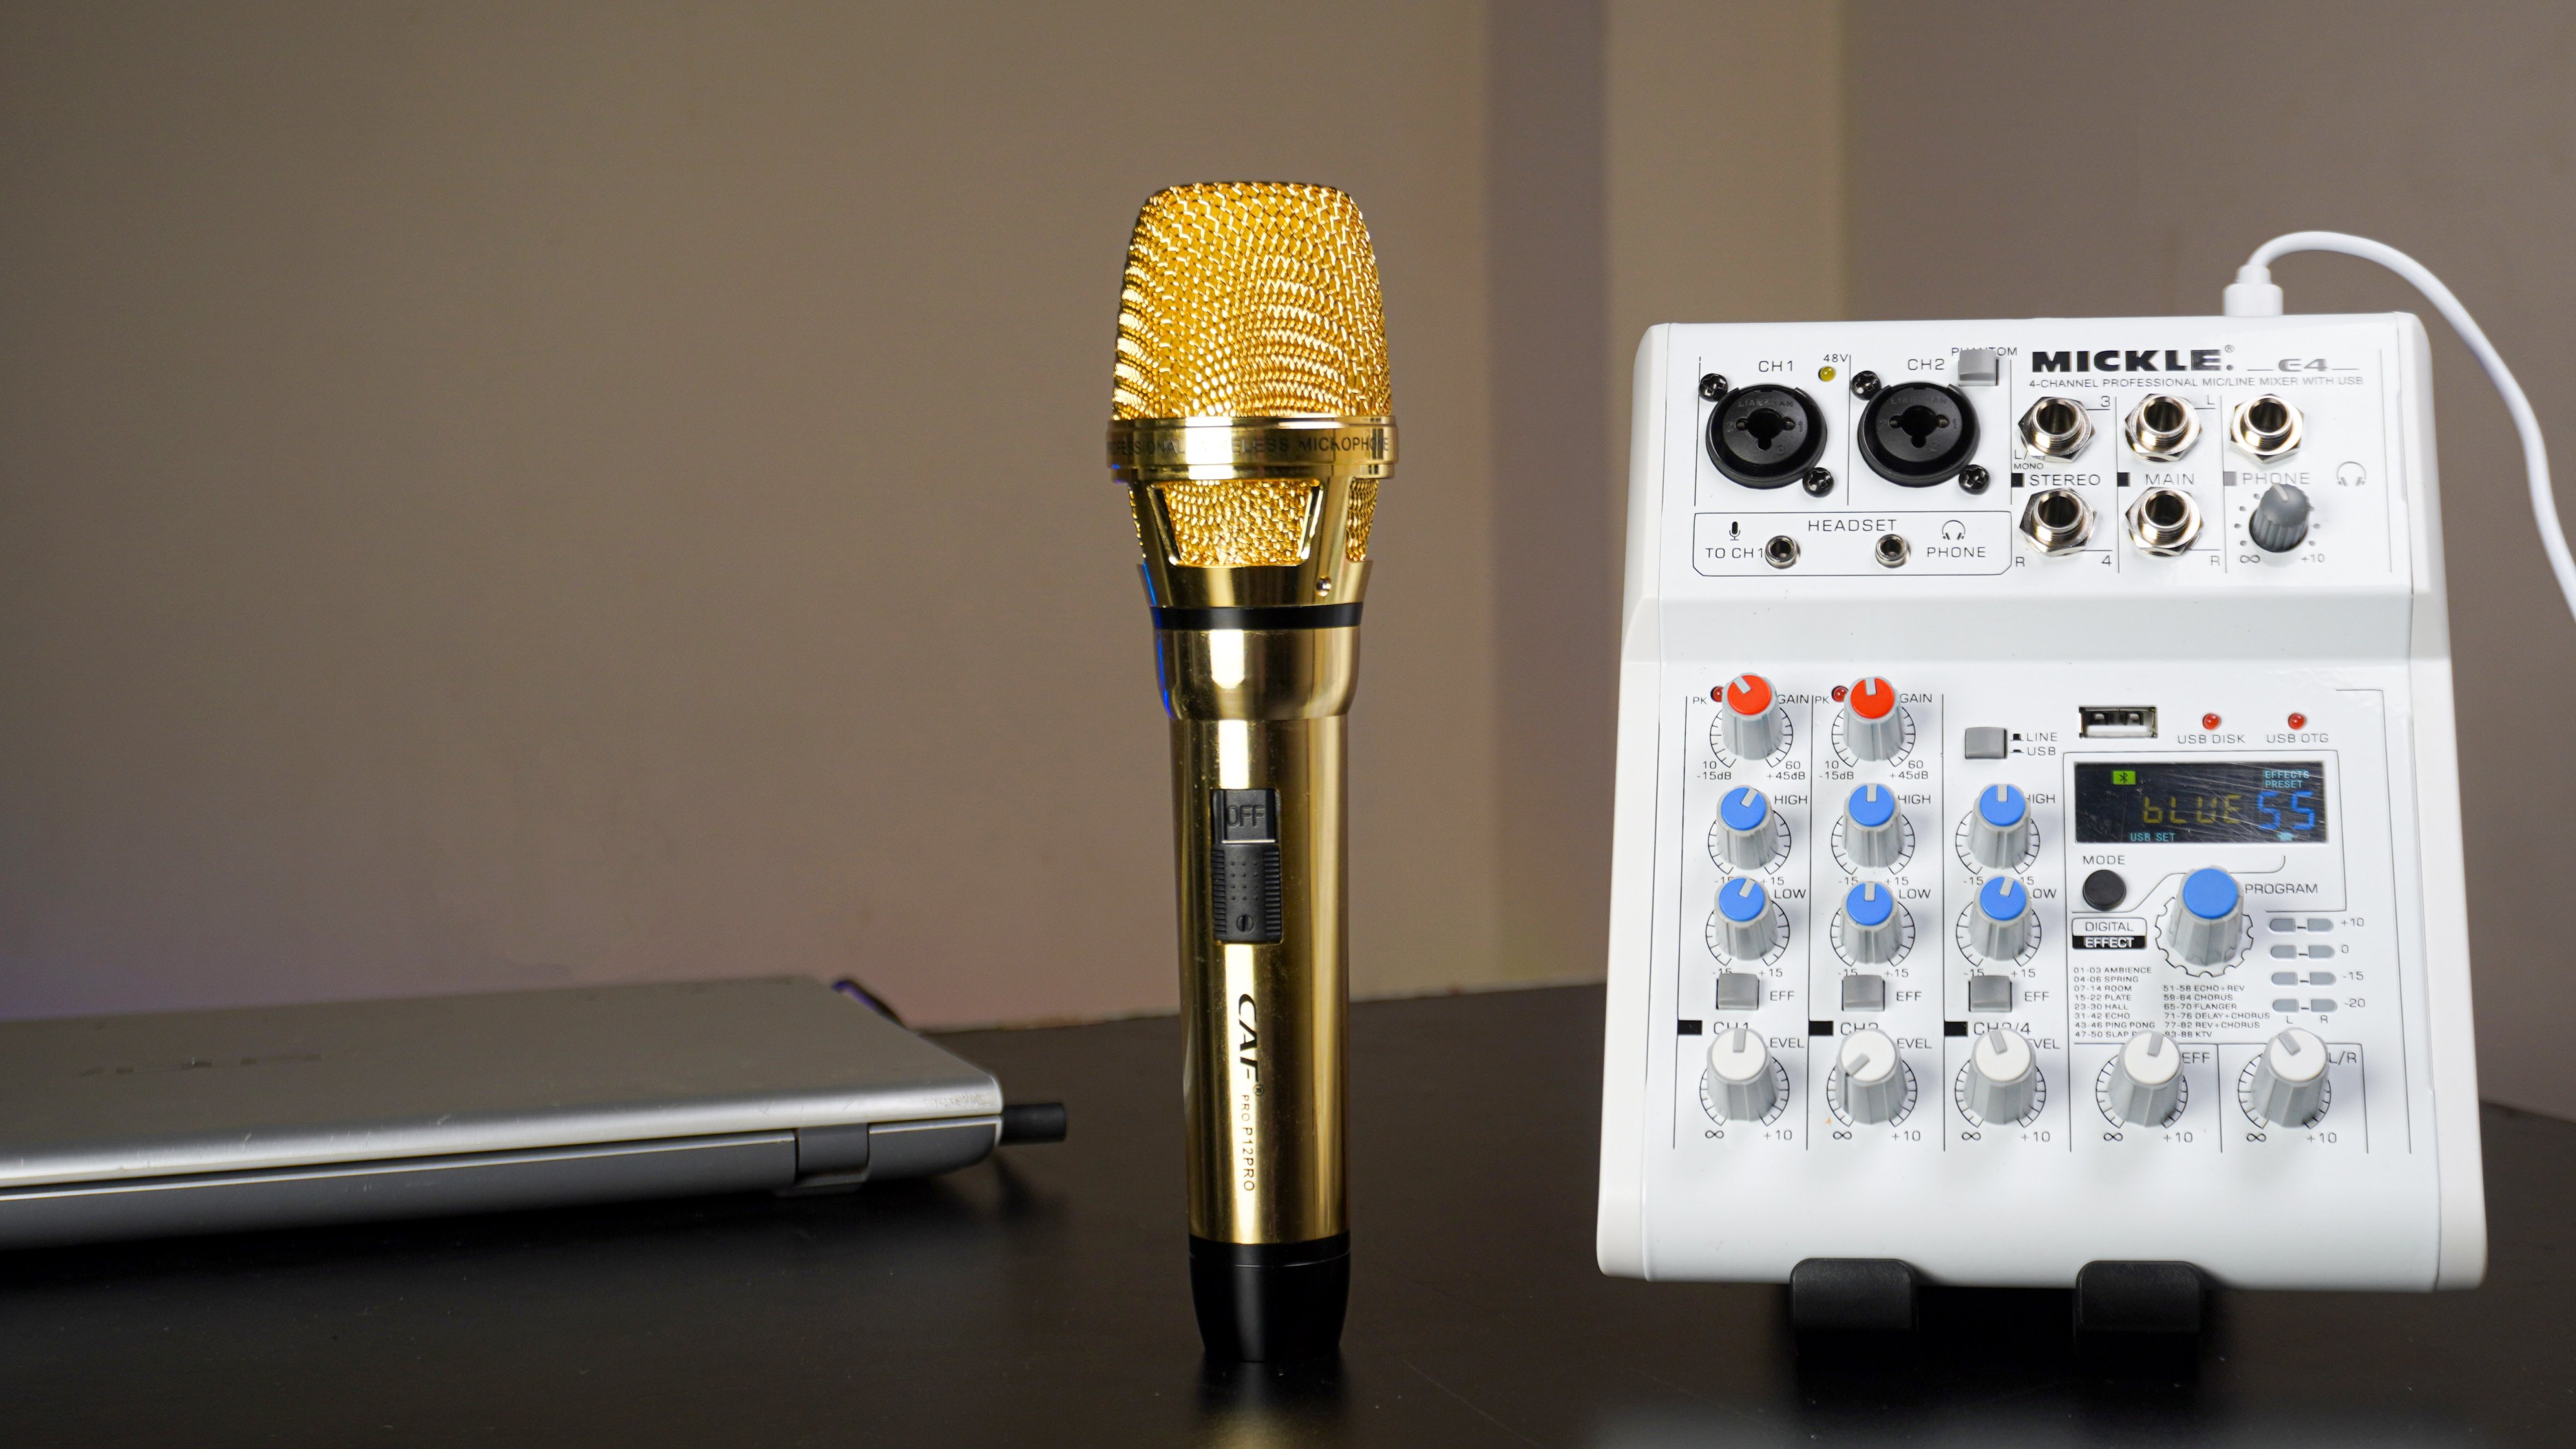 Combo Micro Caf P12, Mixer E4 - Vừa thu âm vừa hát ra loa - Kèm full phụ kiện tai nghe ISK HP-960B, dây live cao cấp, dây kết nối - Hỗ trợ thu âm, livestream, karaoke gia đình